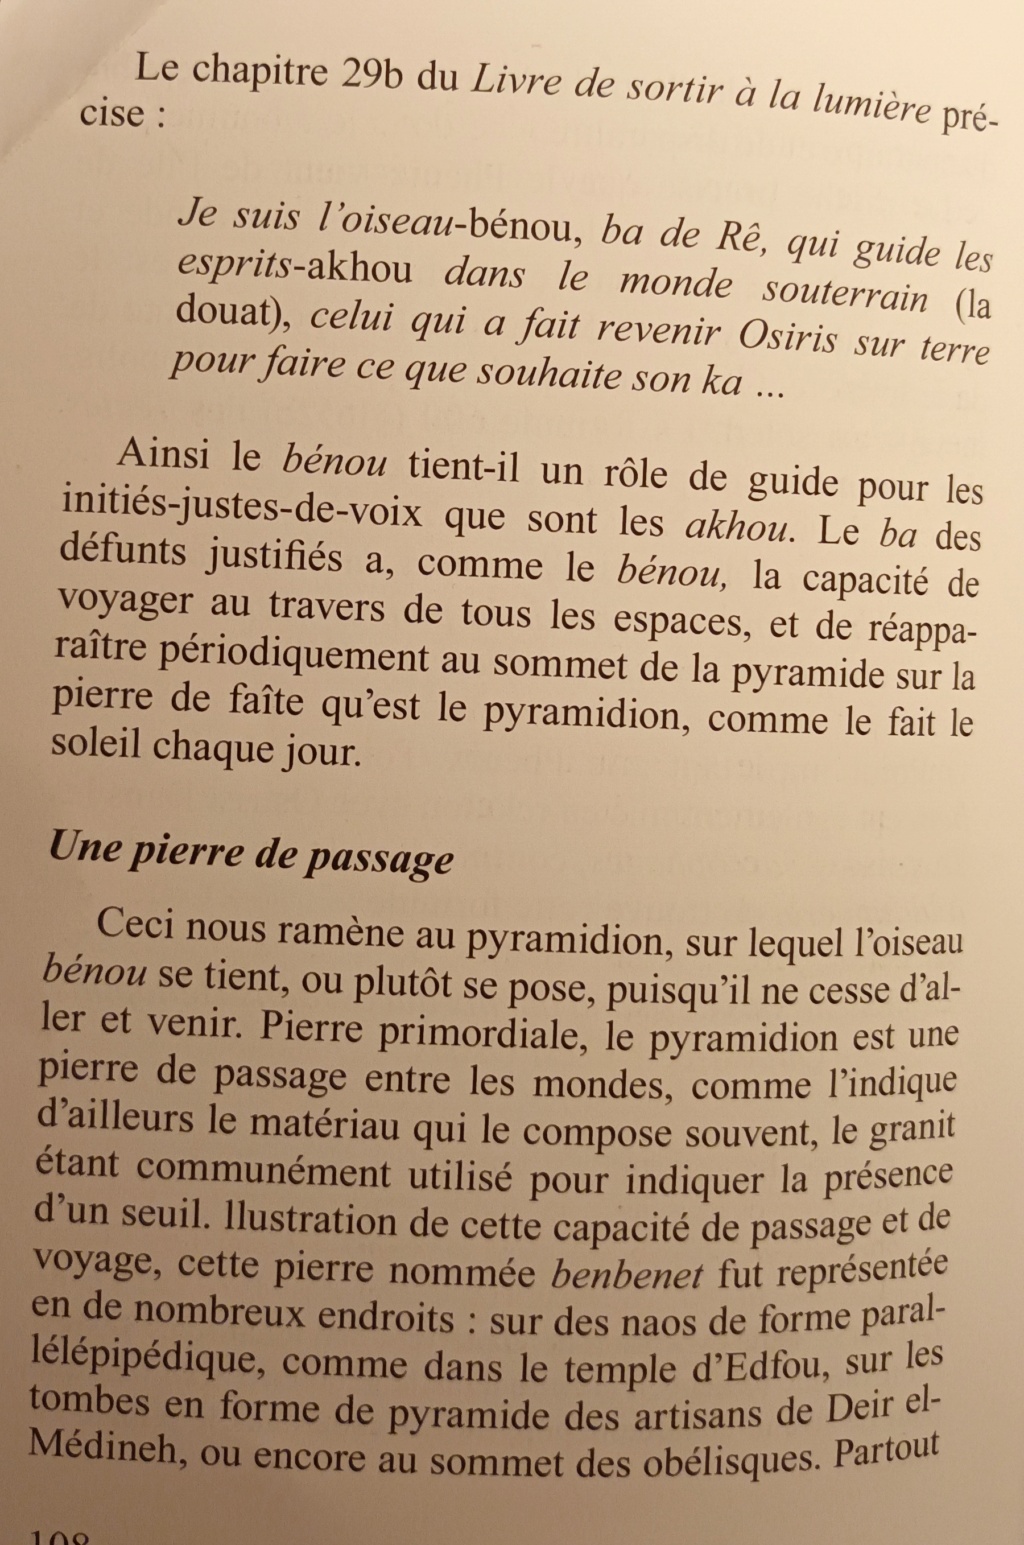 La franc-maçonnerie, la Gnose et le gnosticisme.  - Page 6 Img_2057